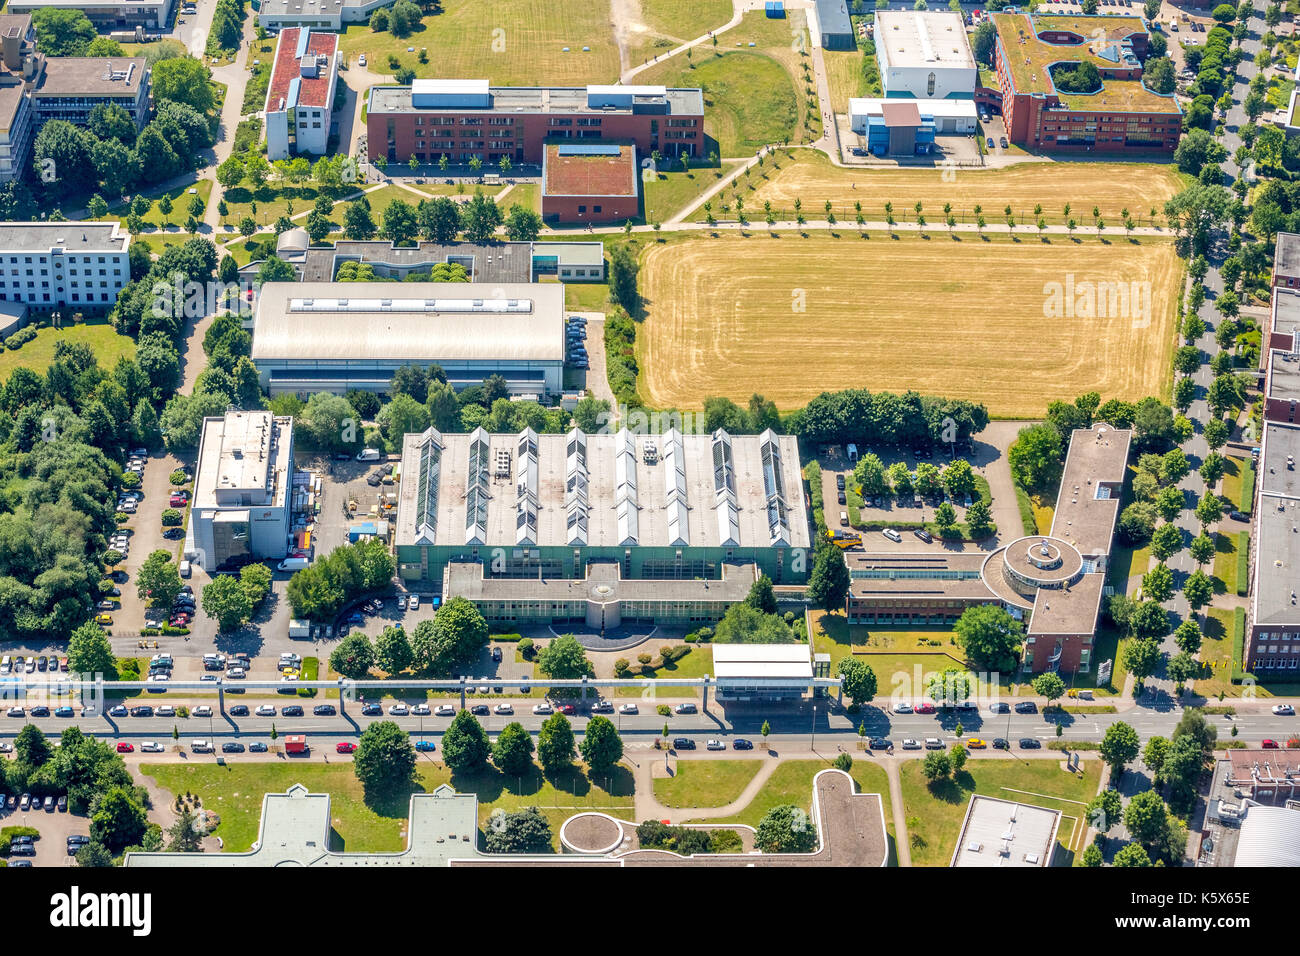 TechnologieParkDortmund sur le campus de l'Université de Dortmund, Dortmund, région de la Ruhr, Rhénanie-du-Nord-Westphalie, Allemagne Dortmund, Europe, vie aérienne Banque D'Images